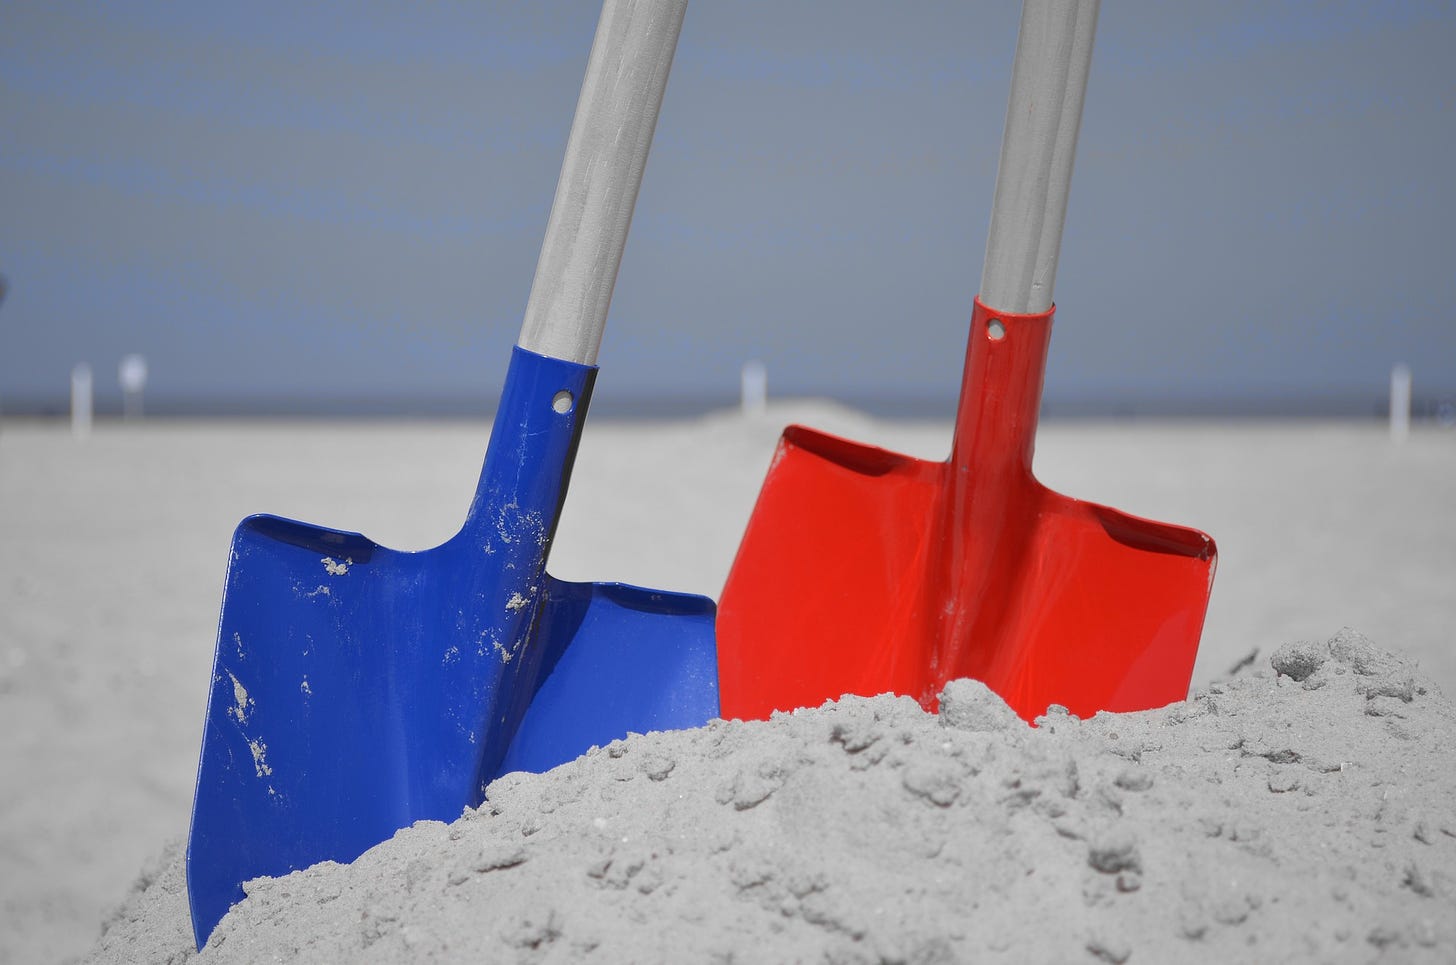 Shovels in sand